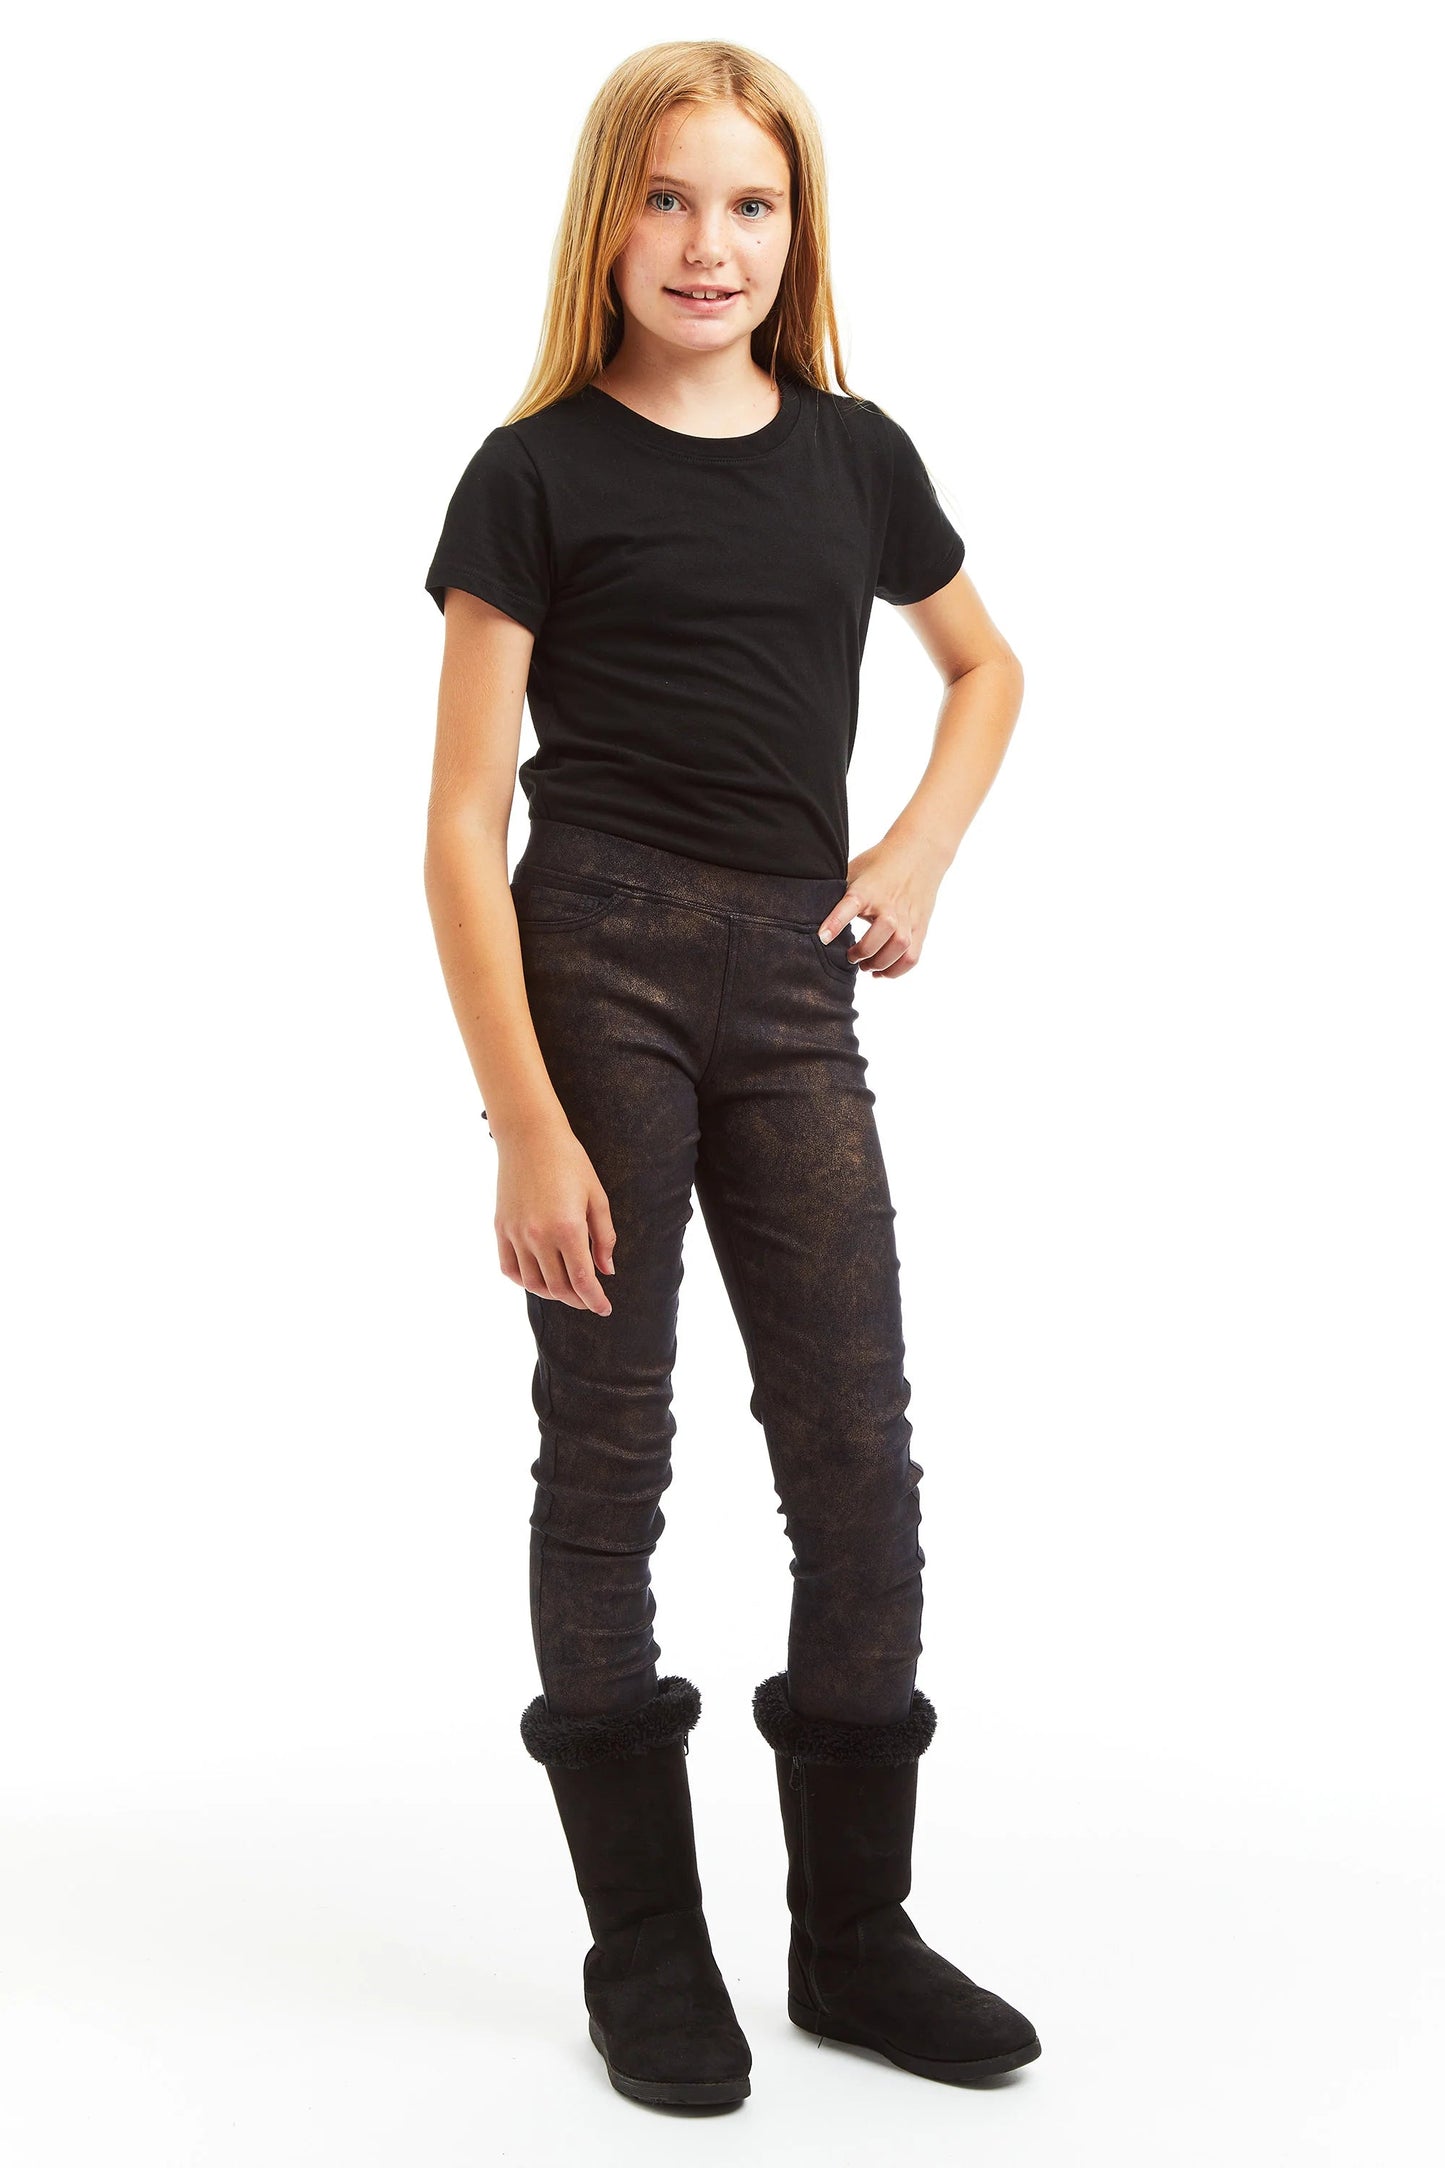 Navy Vintage Suede Skinny Jeans 160 GIRLS APPAREL TWEEN 7-16 Tractr 